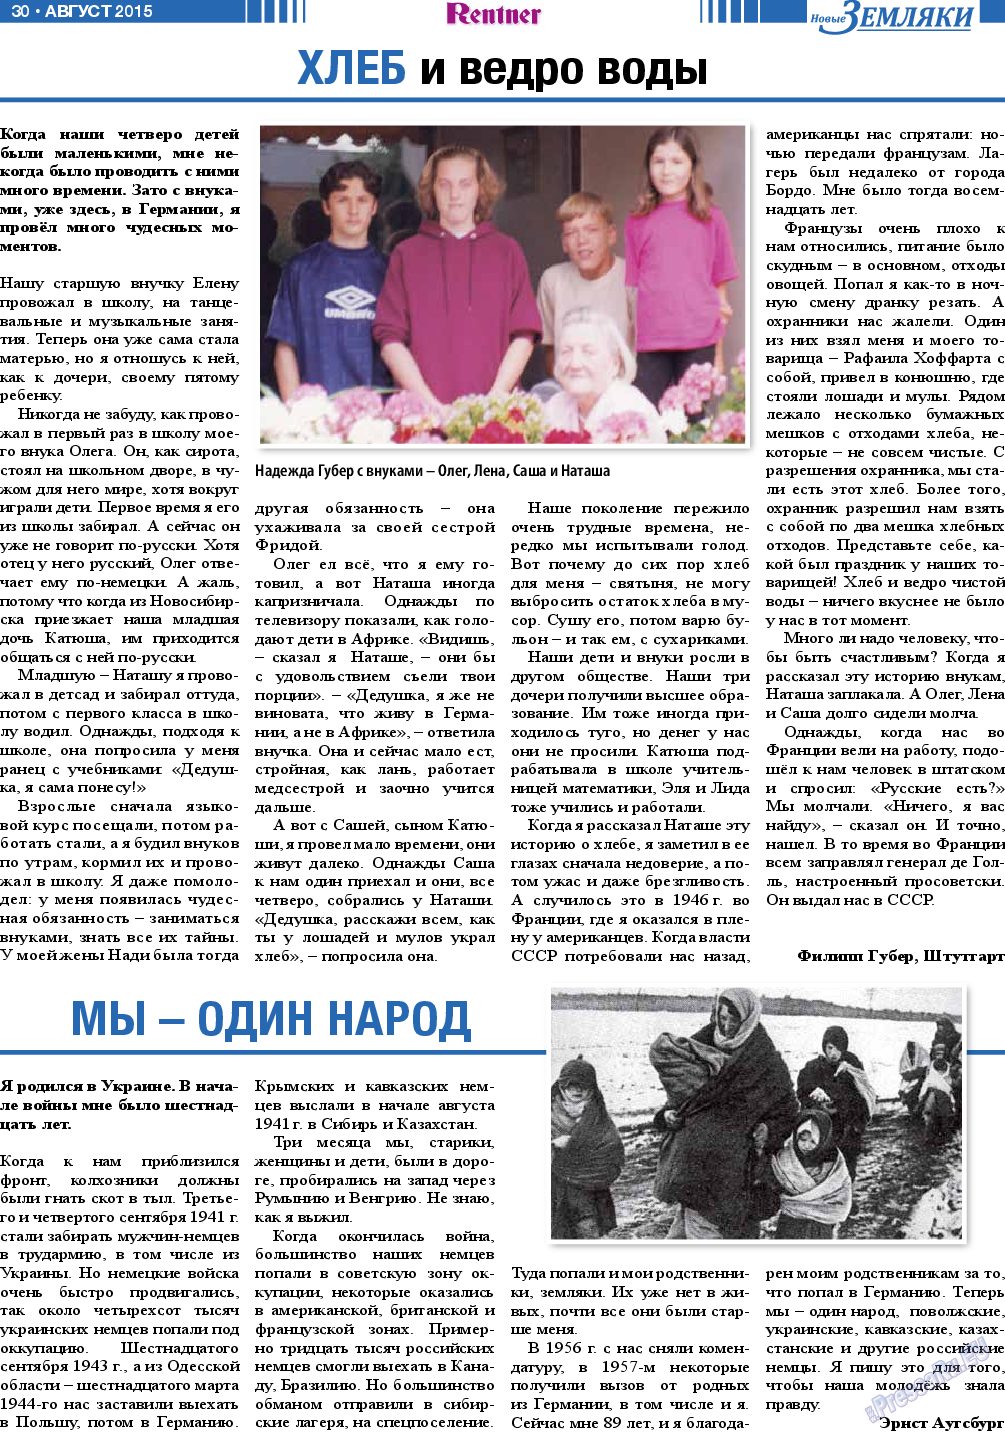 Новые Земляки, газета. 2015 №8 стр.30